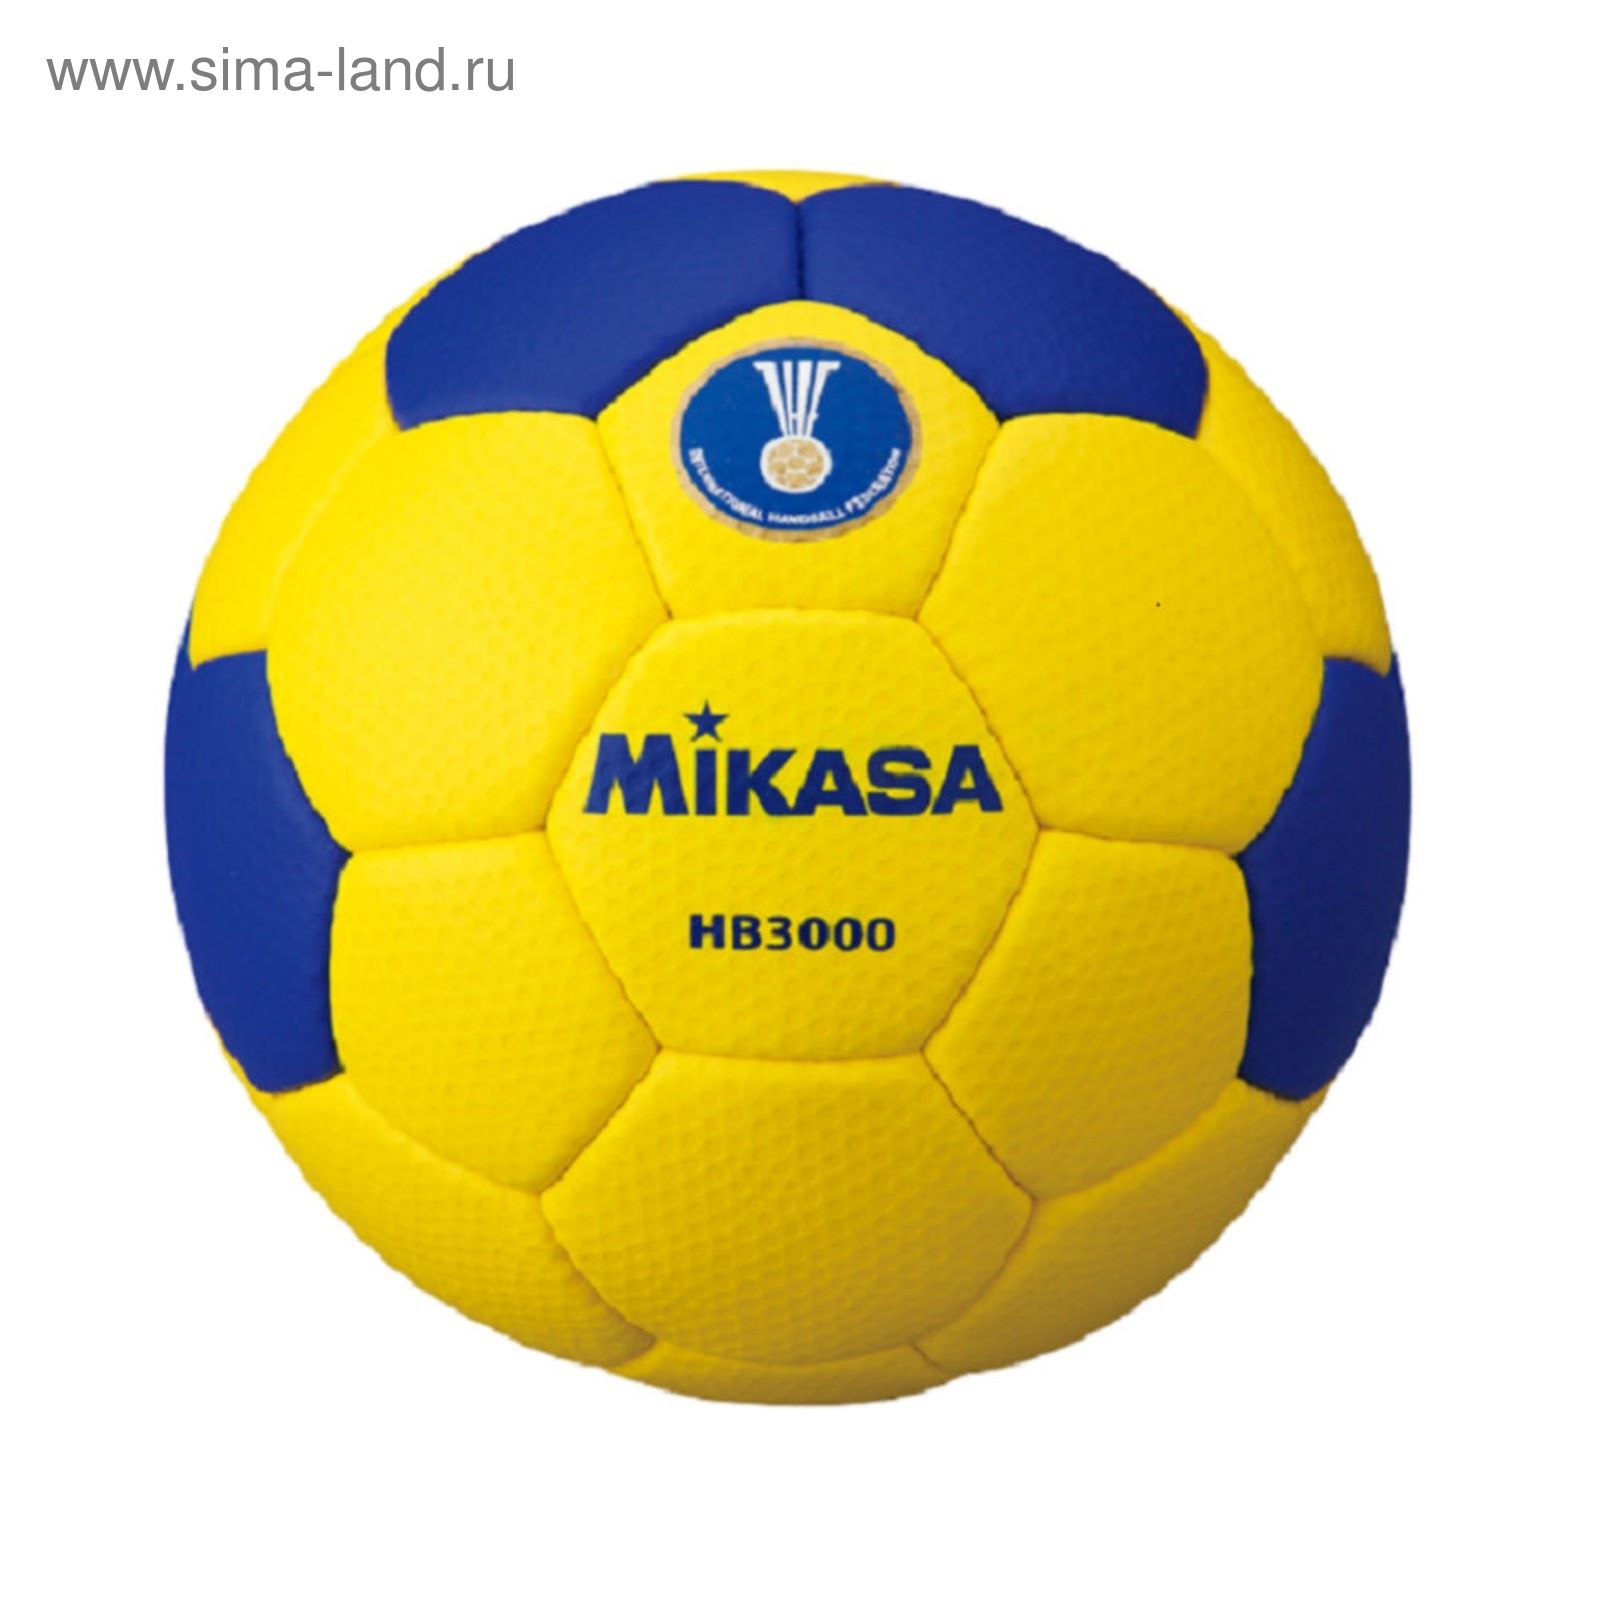 Мяч гандбольный Mikasa HB3000